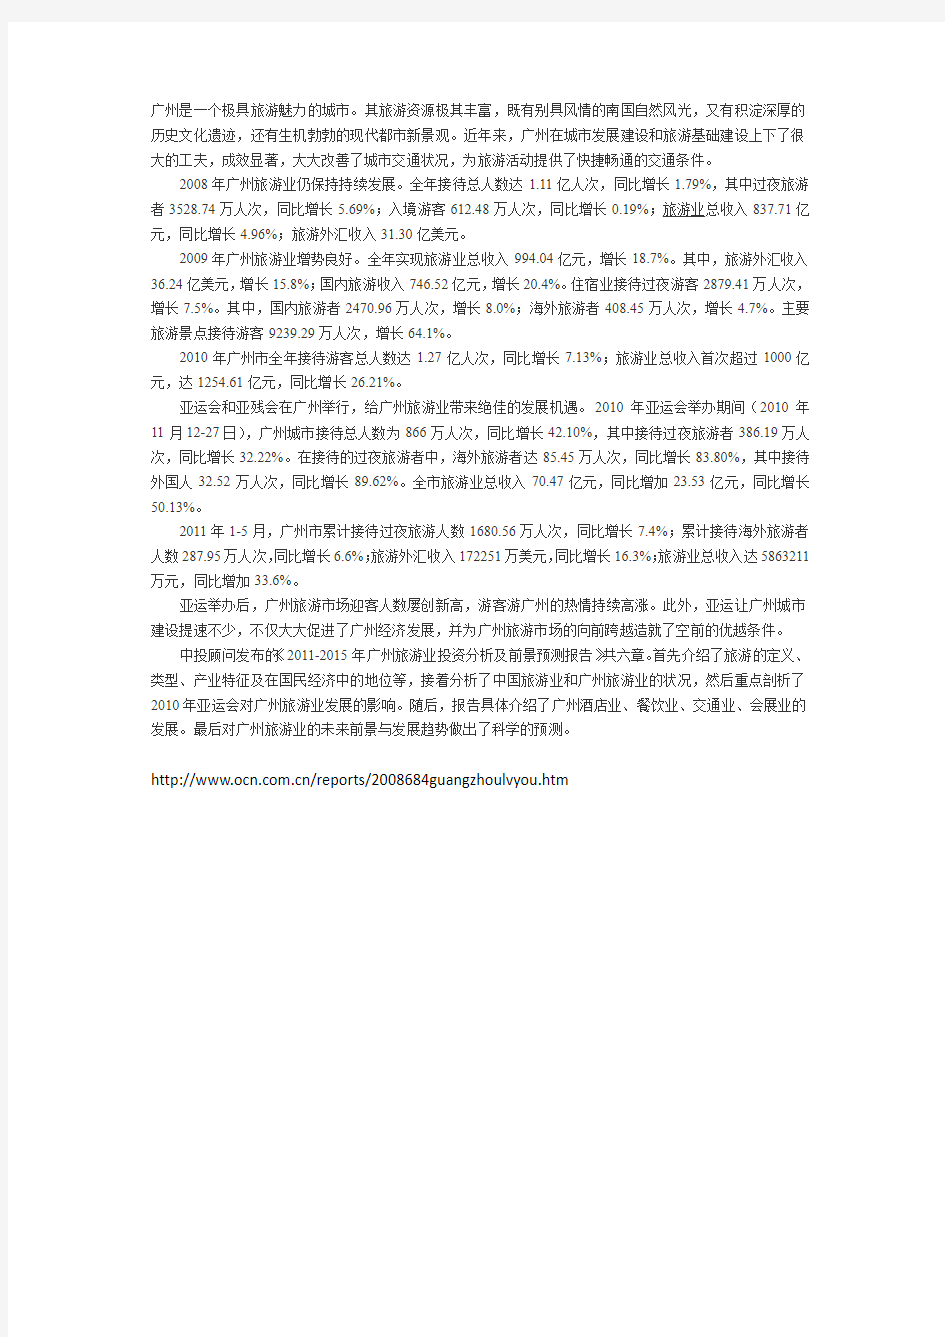 关于广州旅游业2011-2015的发展报告